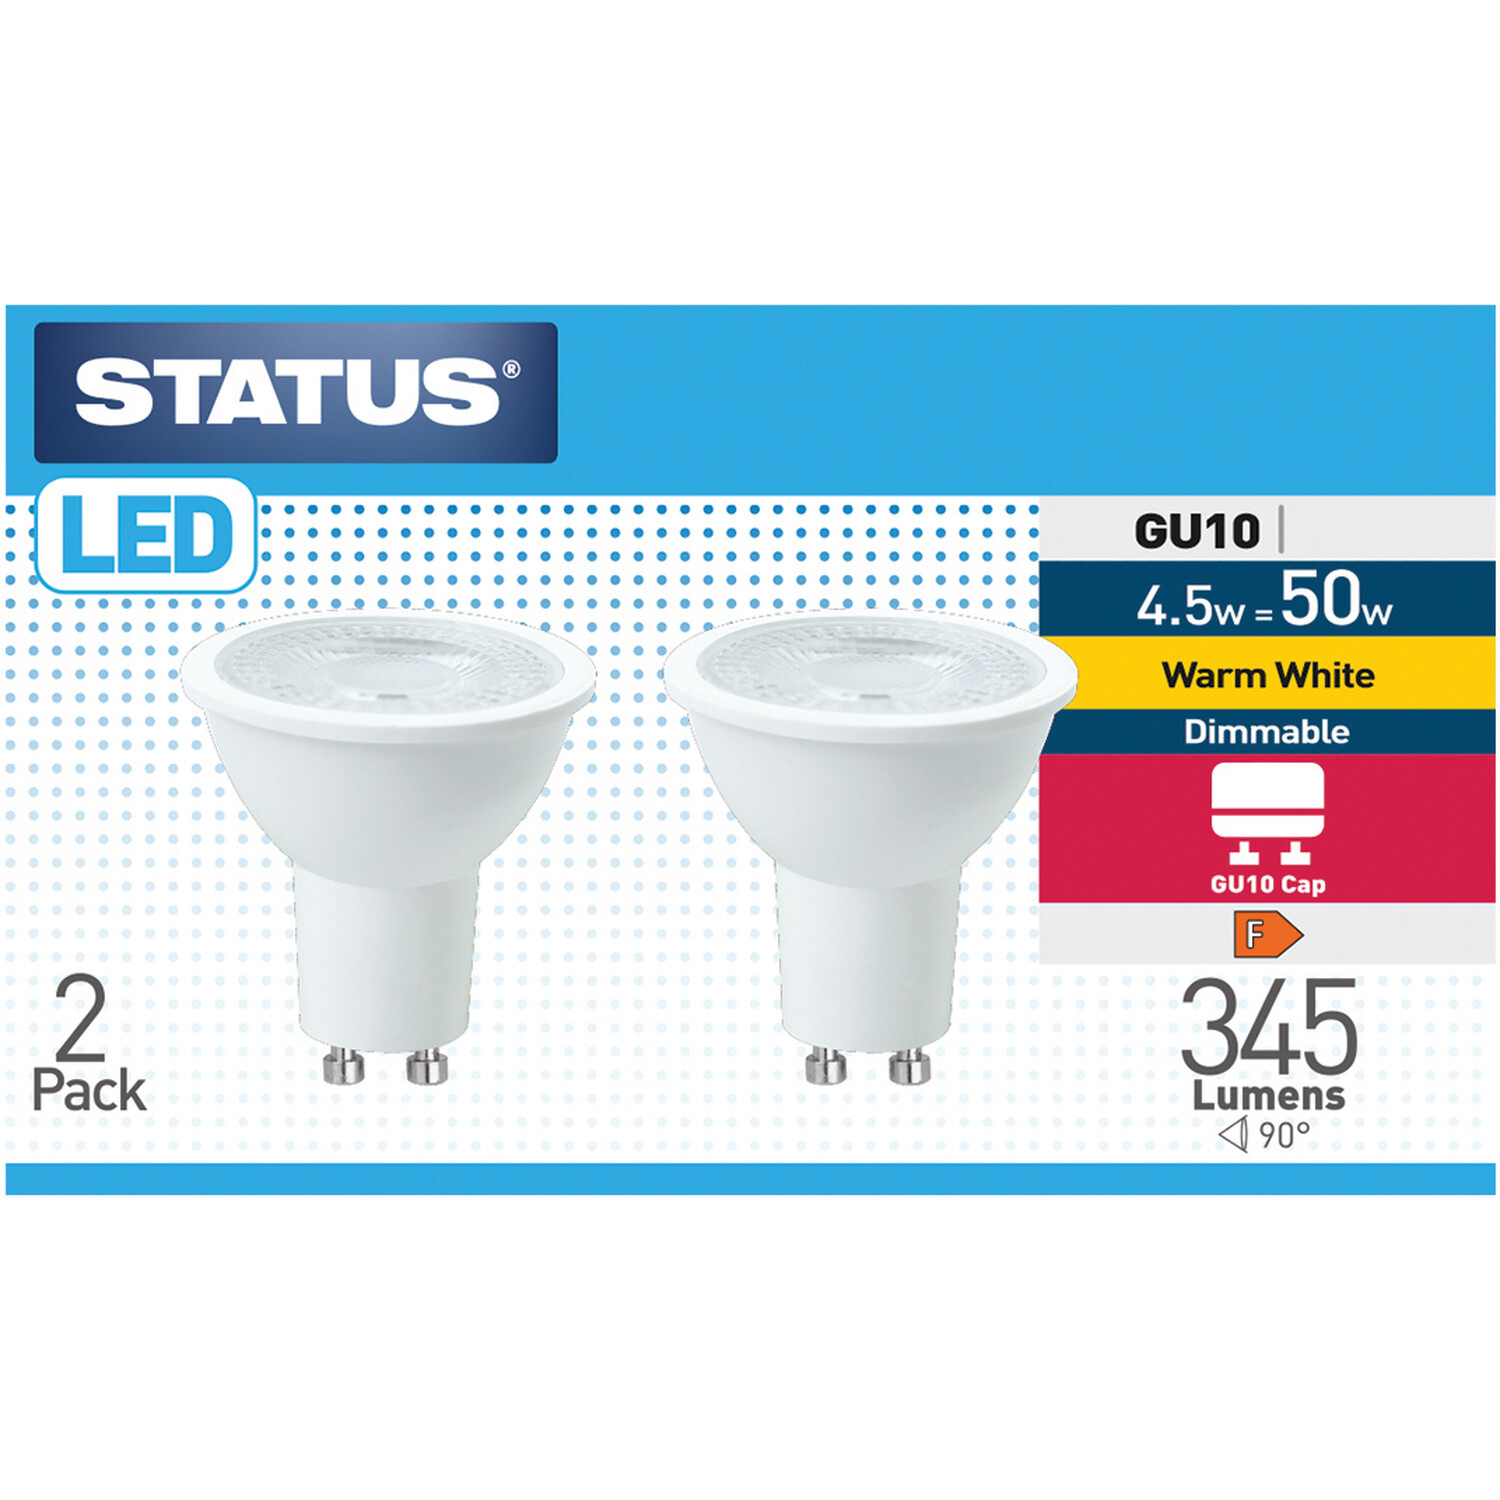 Pack of 2 Status LED 4.5W GU10 Lightbulbs Image 1